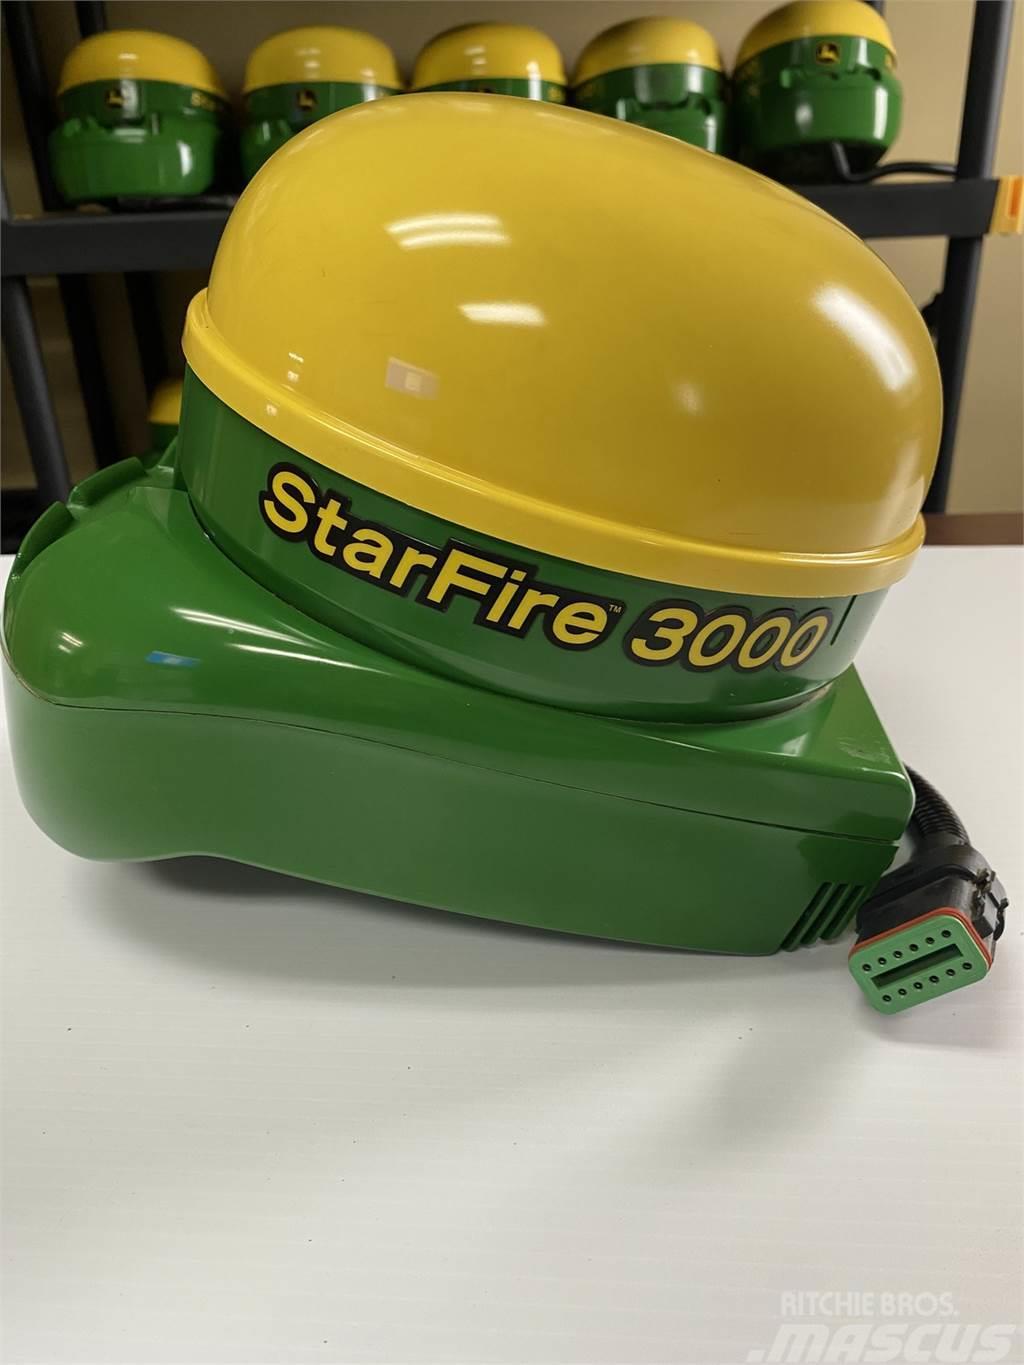 John Deere Starfire 3000 Hassas ekim makinalari